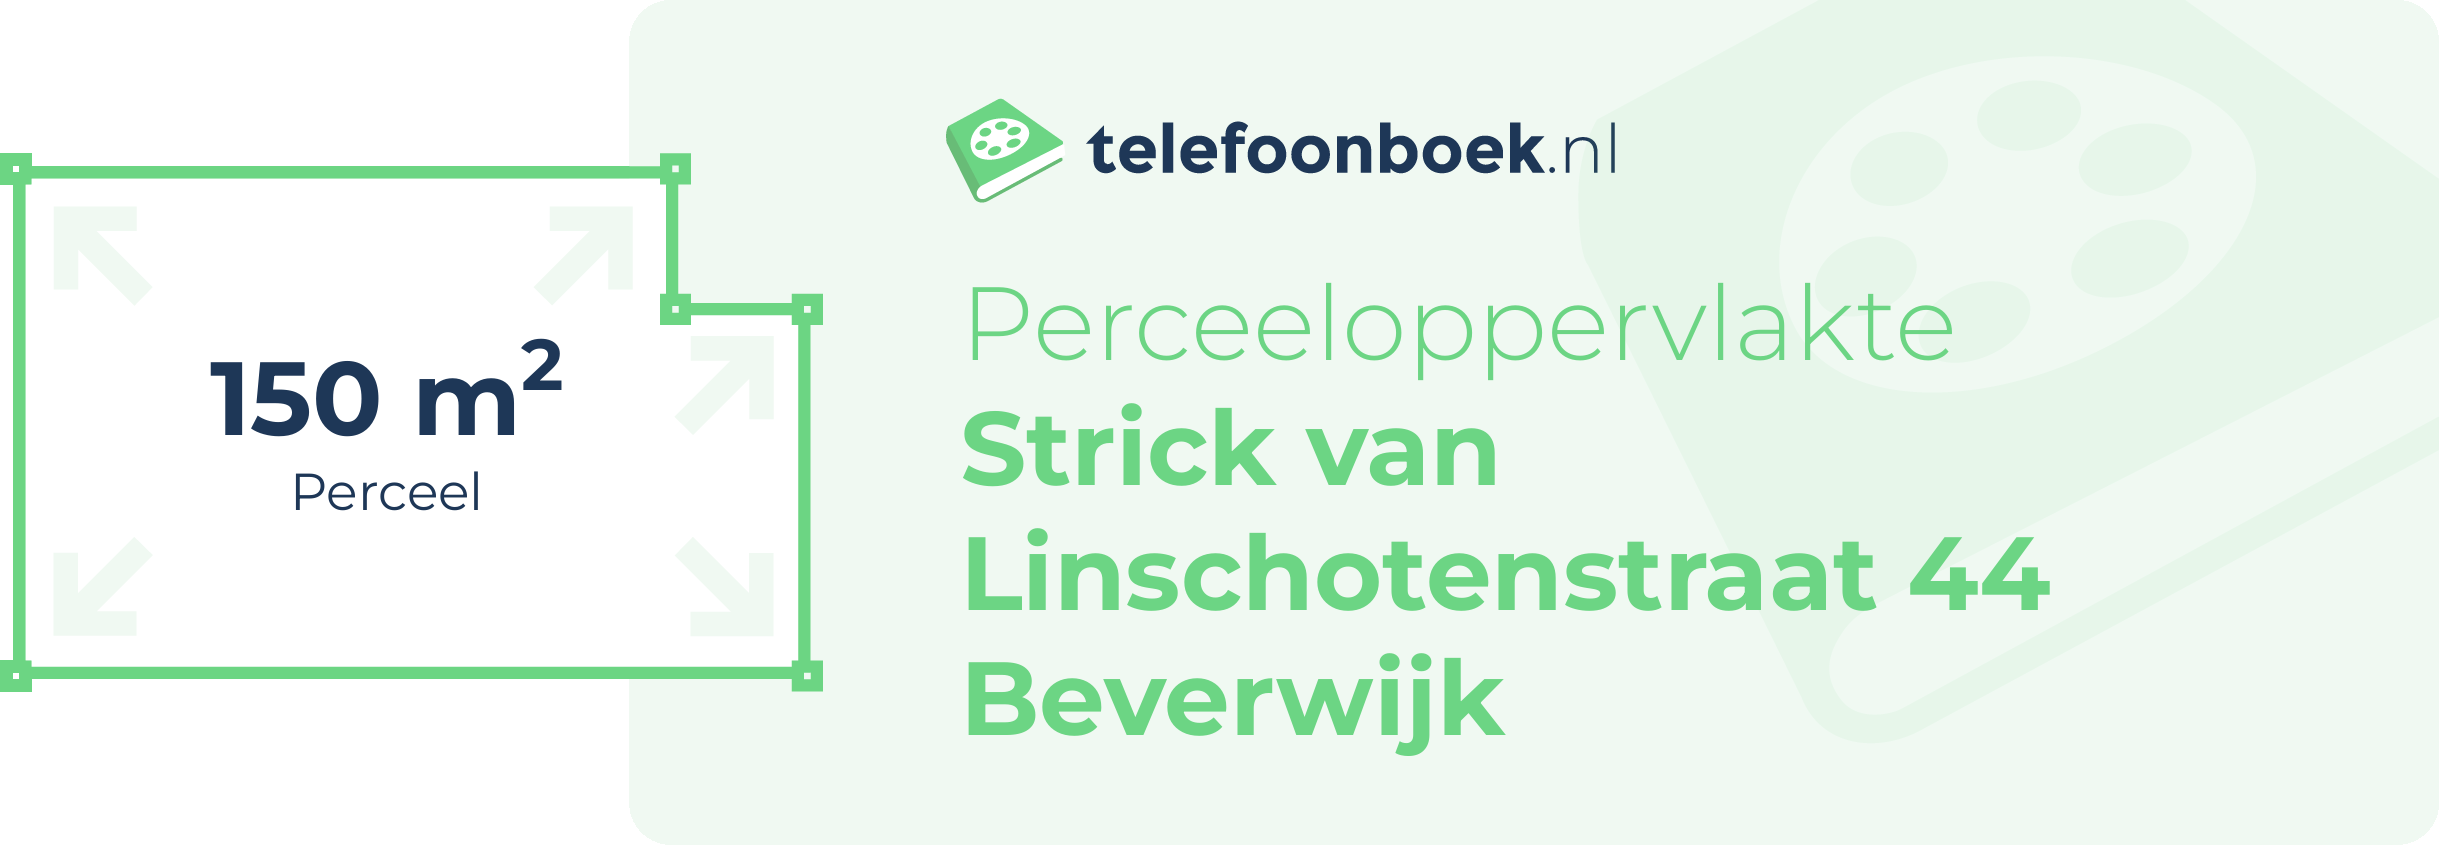 Perceeloppervlakte Strick Van Linschotenstraat 44 Beverwijk